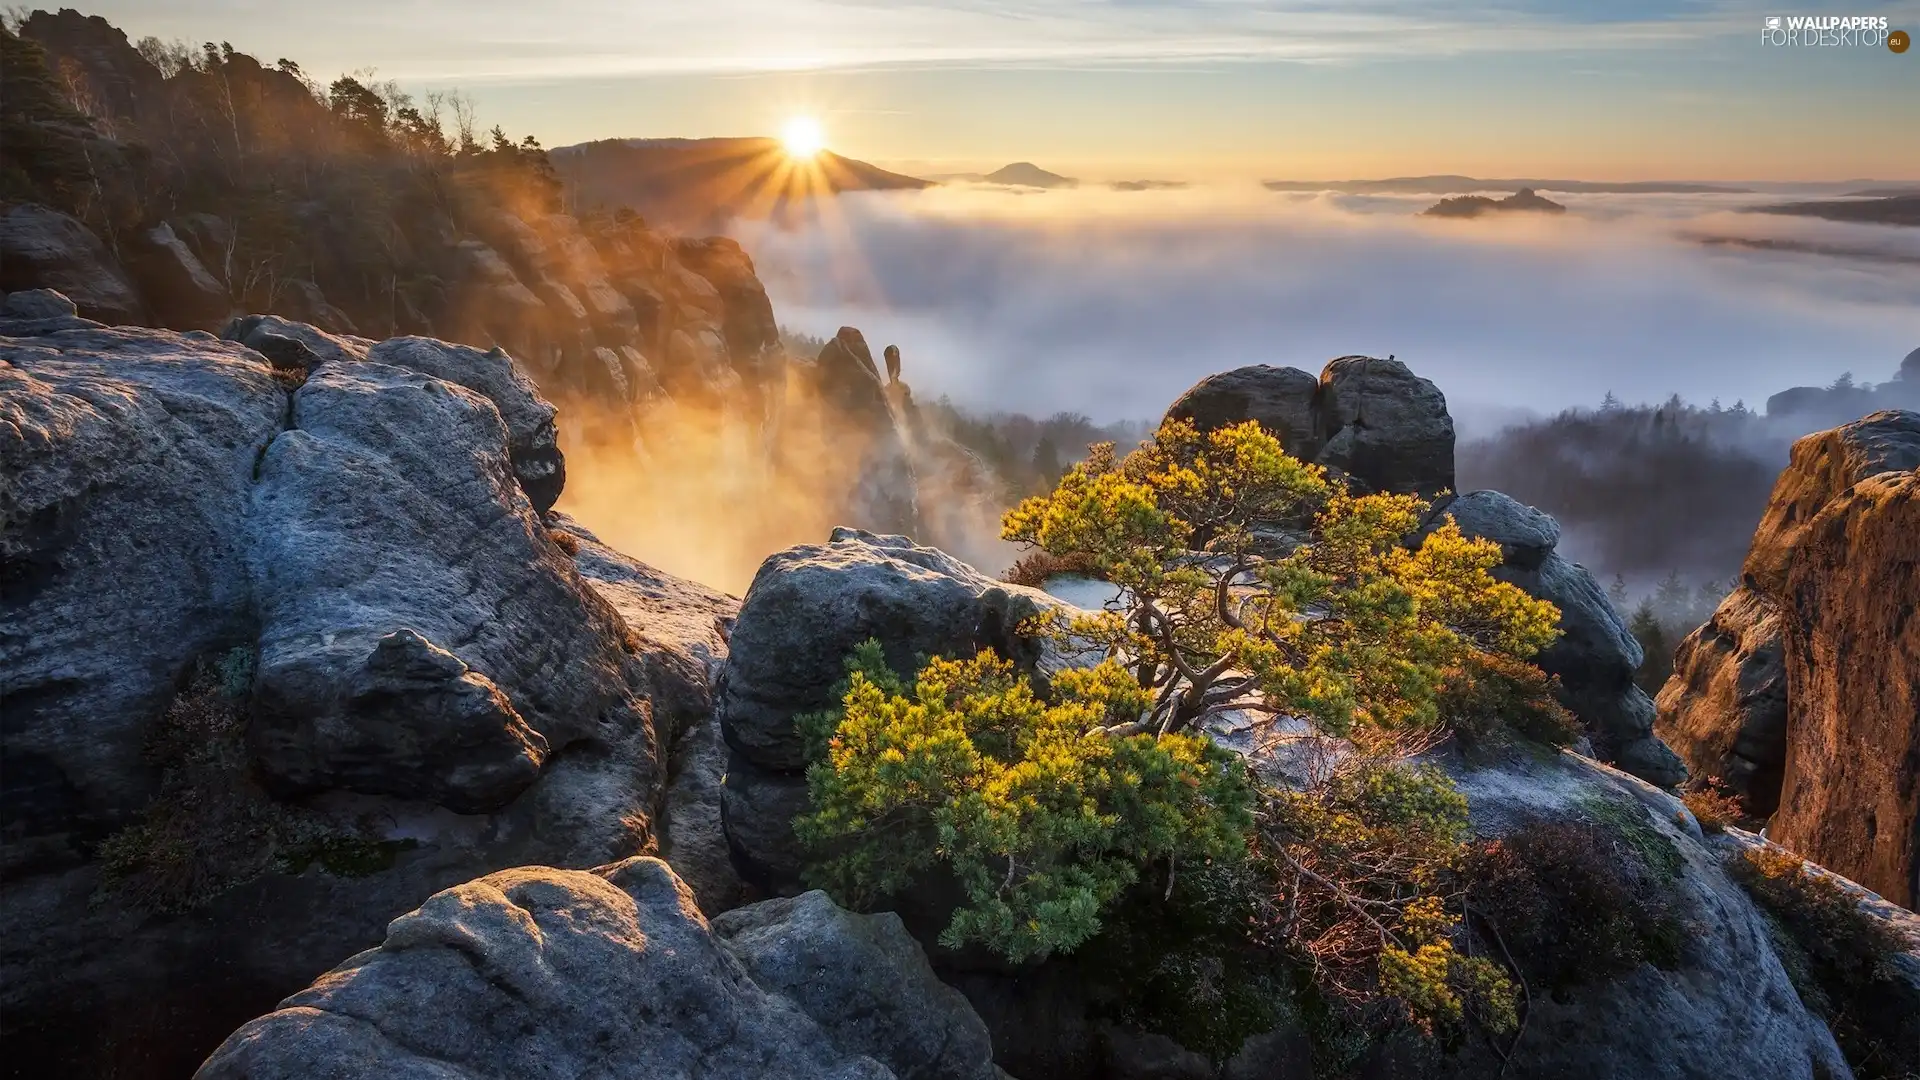 Děčínská vrchovina, Germany, Fog, woods, pine, rocks, Saxon Switzerland National Park, Great Sunsets